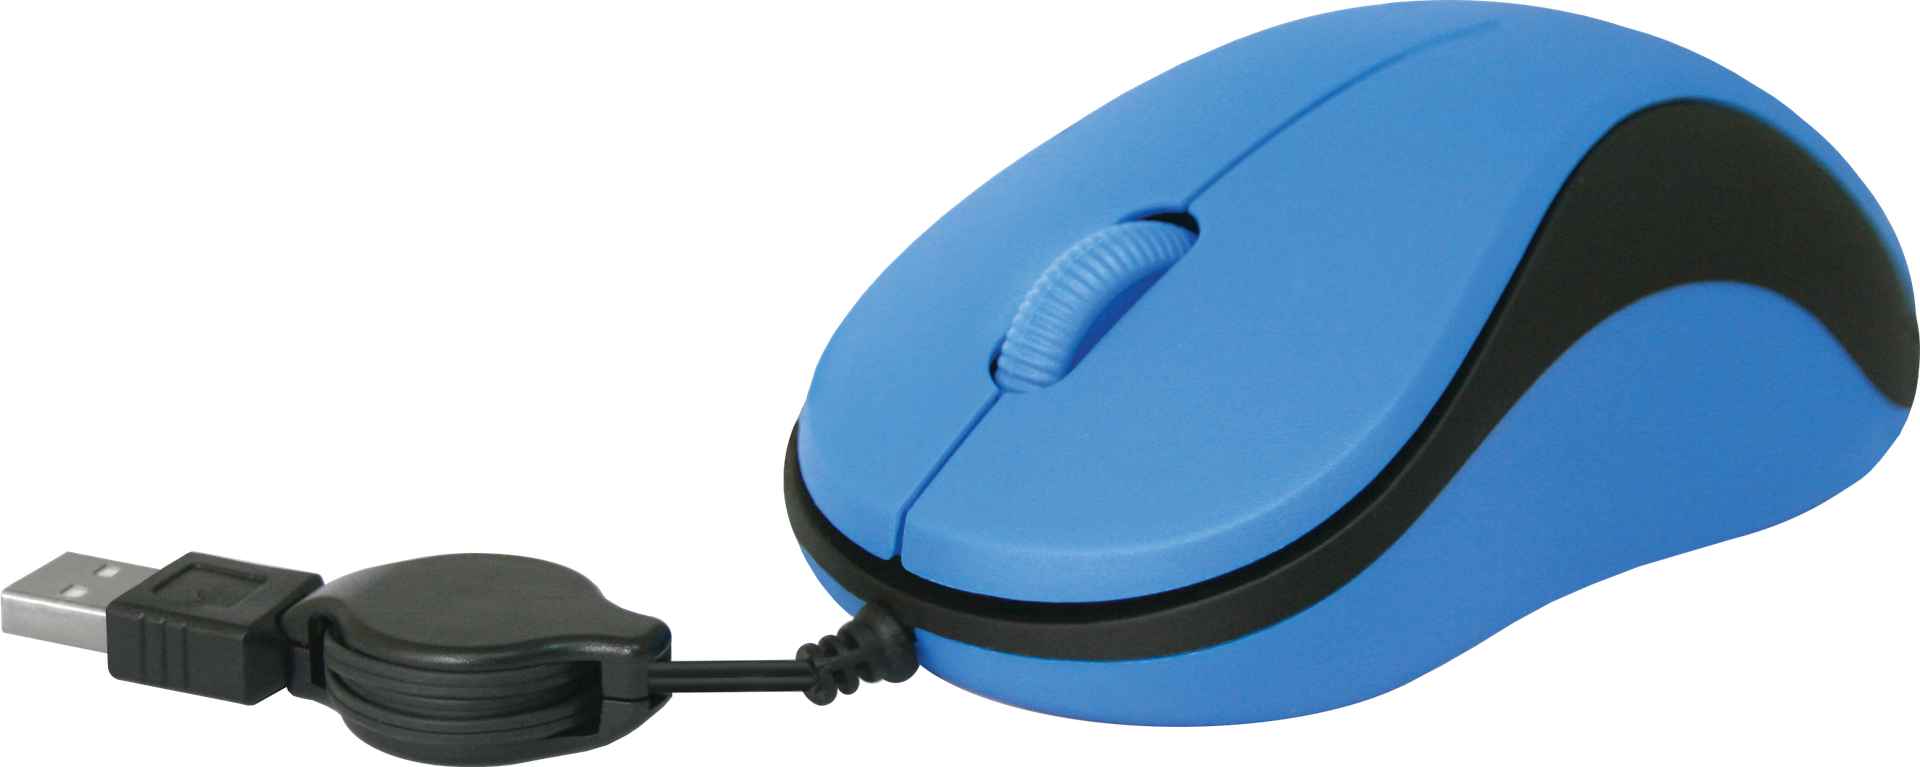 Мышь Defender провод MS-960 синий, скручивающий кабель